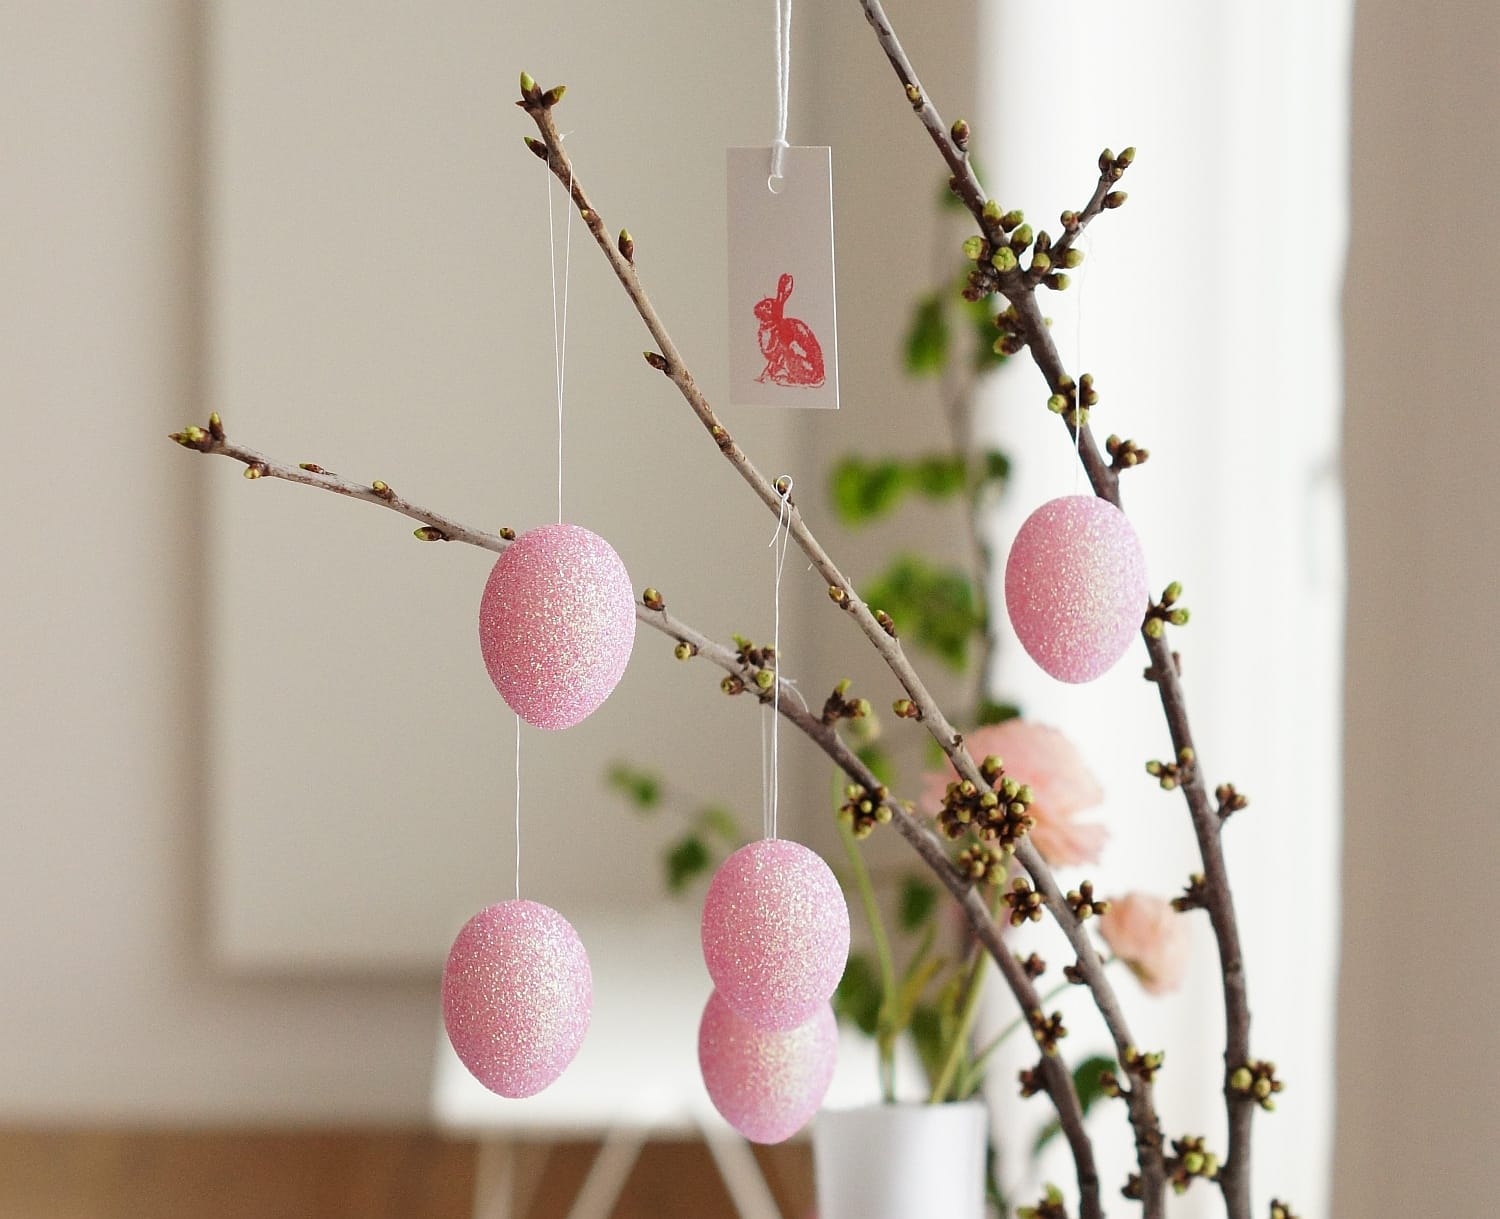 Langstielige Zweige mit ersten, grünen Knospen bringen die rosa eingefärbten Eier besonders effektvoll zur Geltung - und dazu noch den Frühling ins Haus.